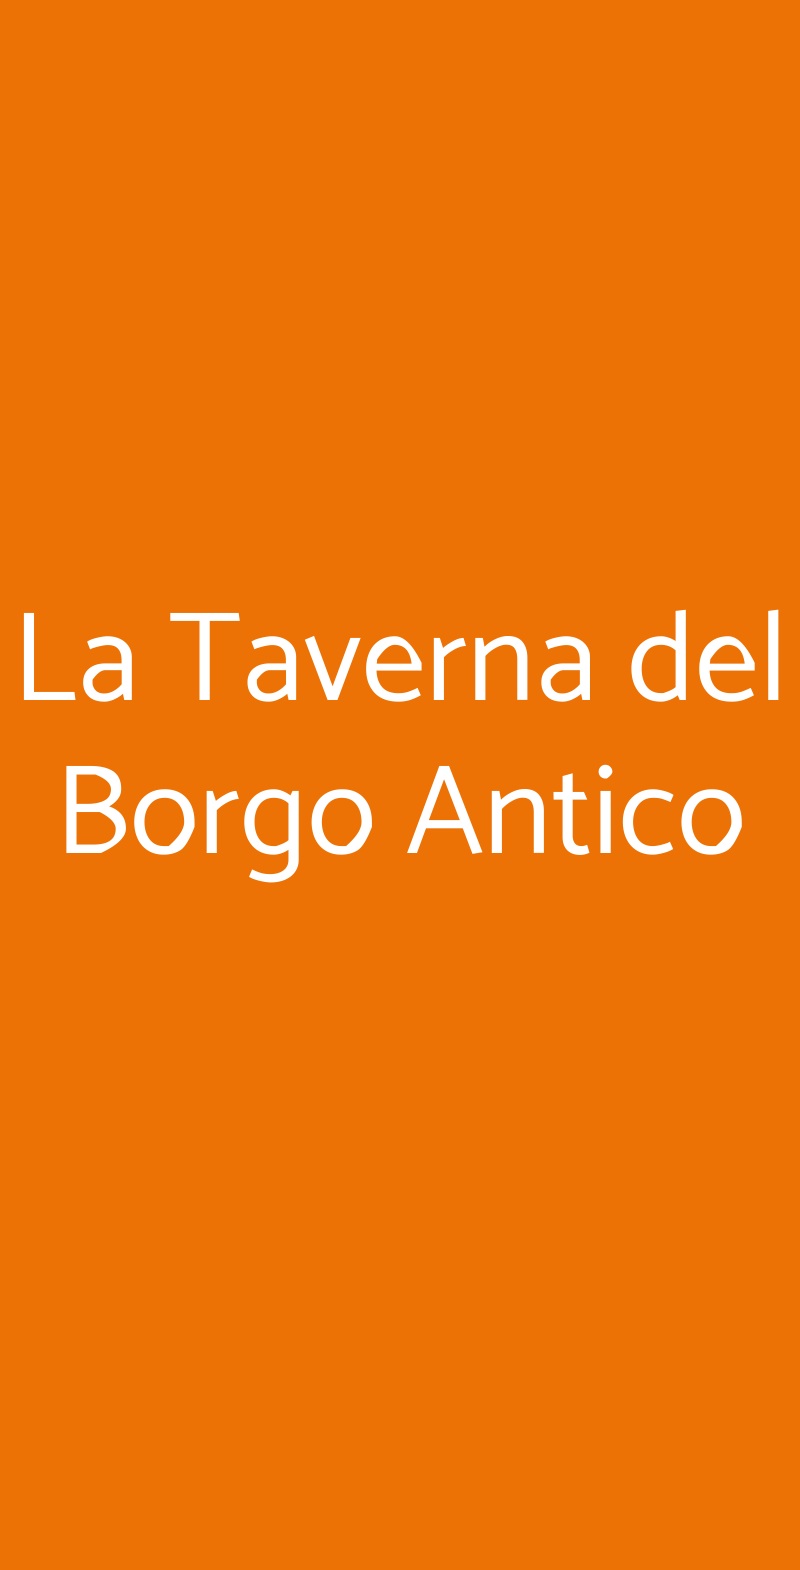 La Taverna del Borgo Antico Milano menù 1 pagina